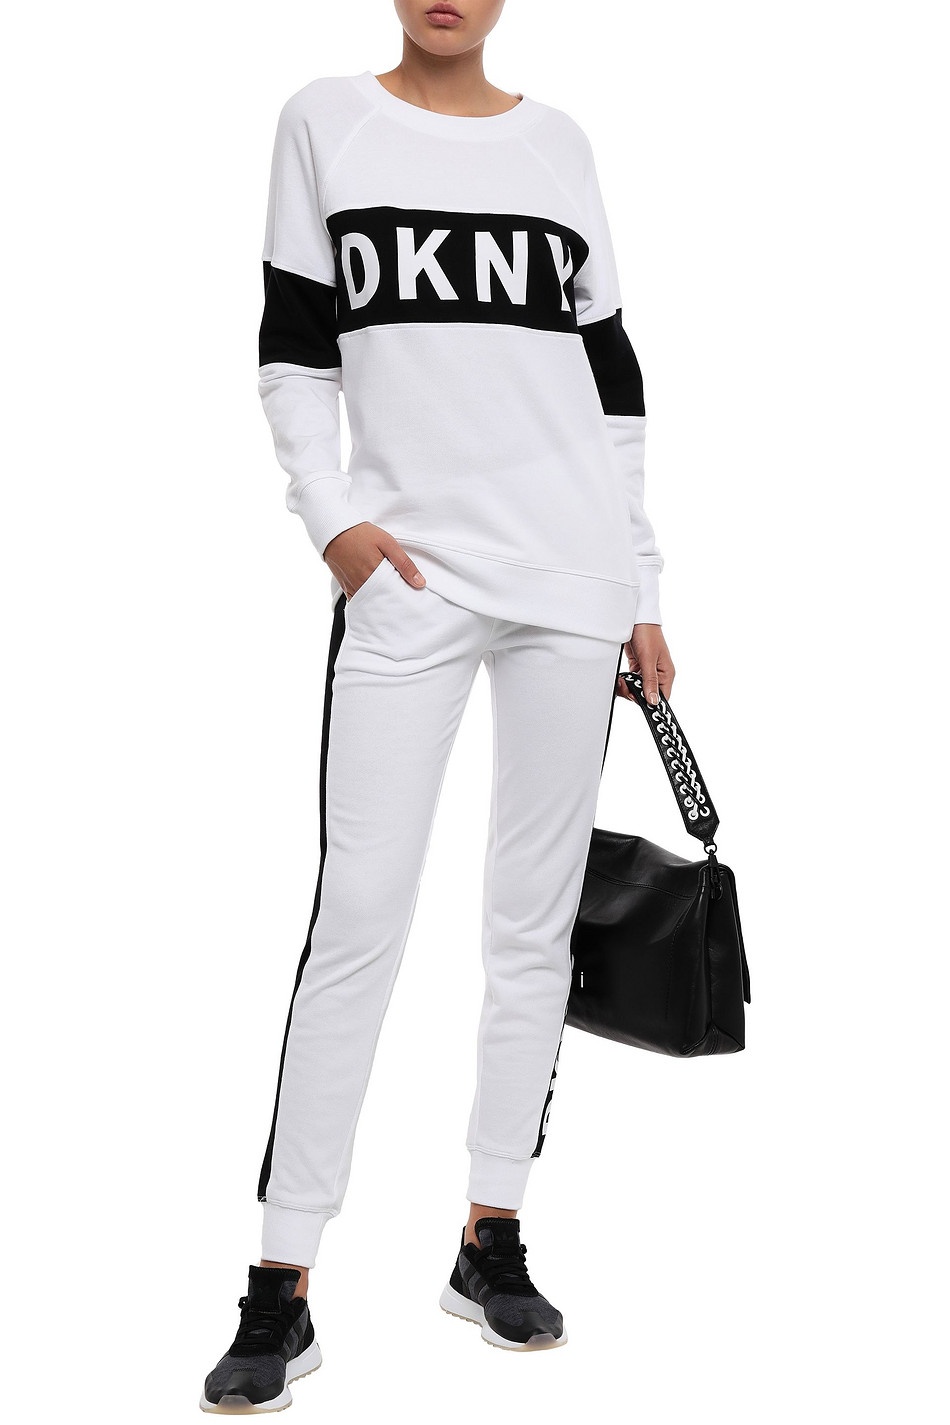 Спортивные штаны DKNY, размер L